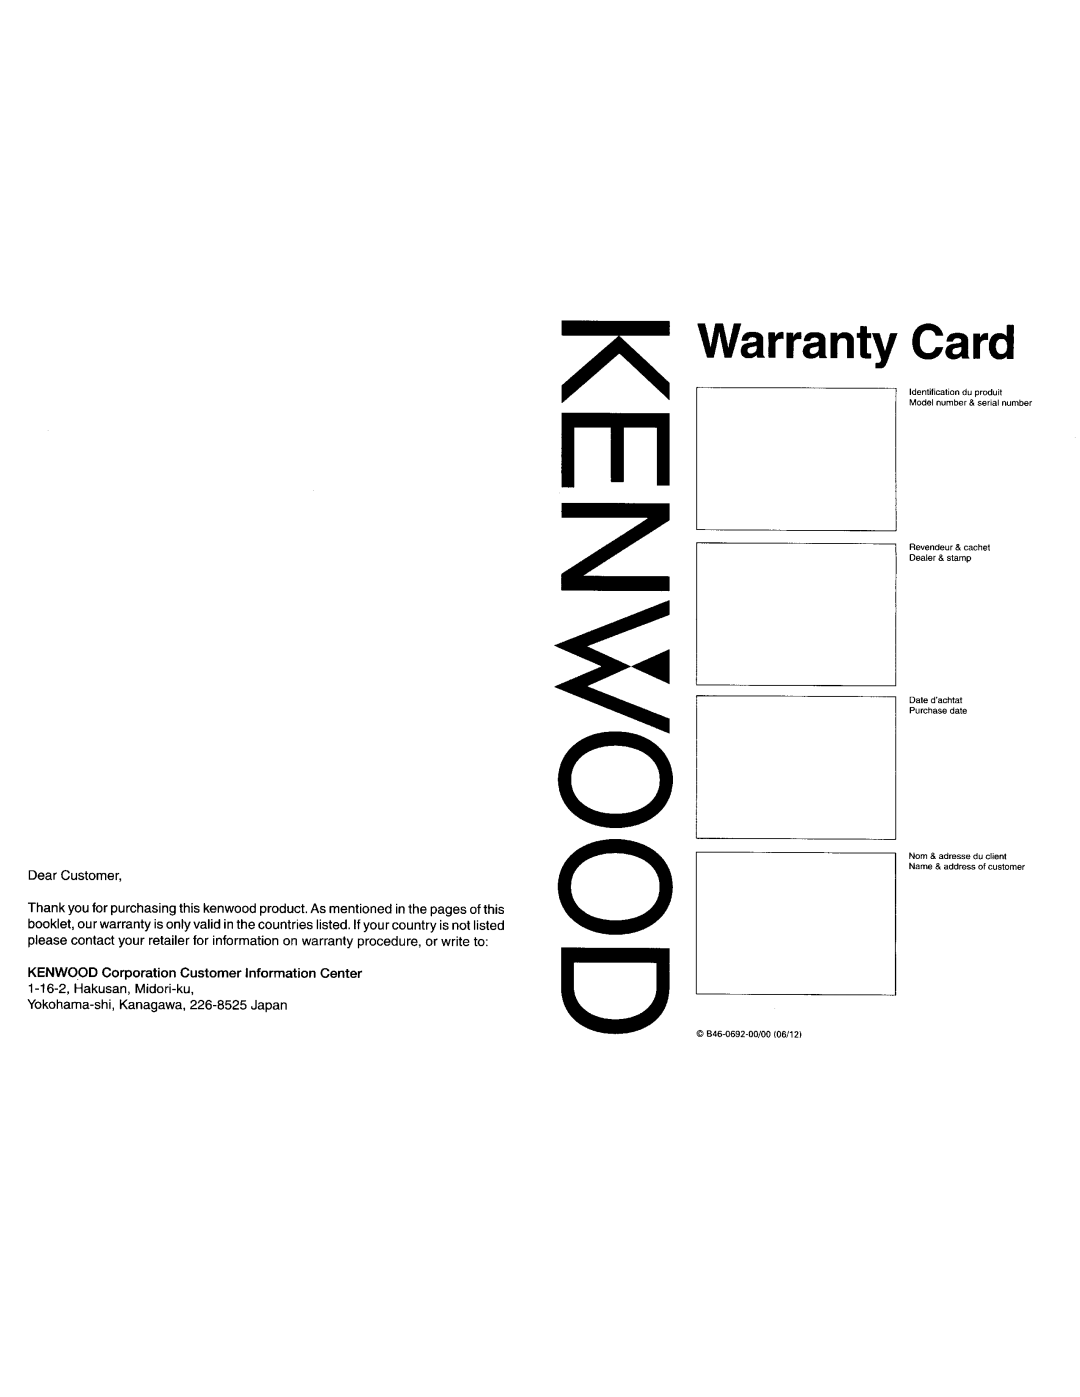 Kenwood KDC-MP438U o o o, Warranty Card, KENWOOD Corporation Customer Information Center, 1-16-2,Hakusan, Midori-ku 